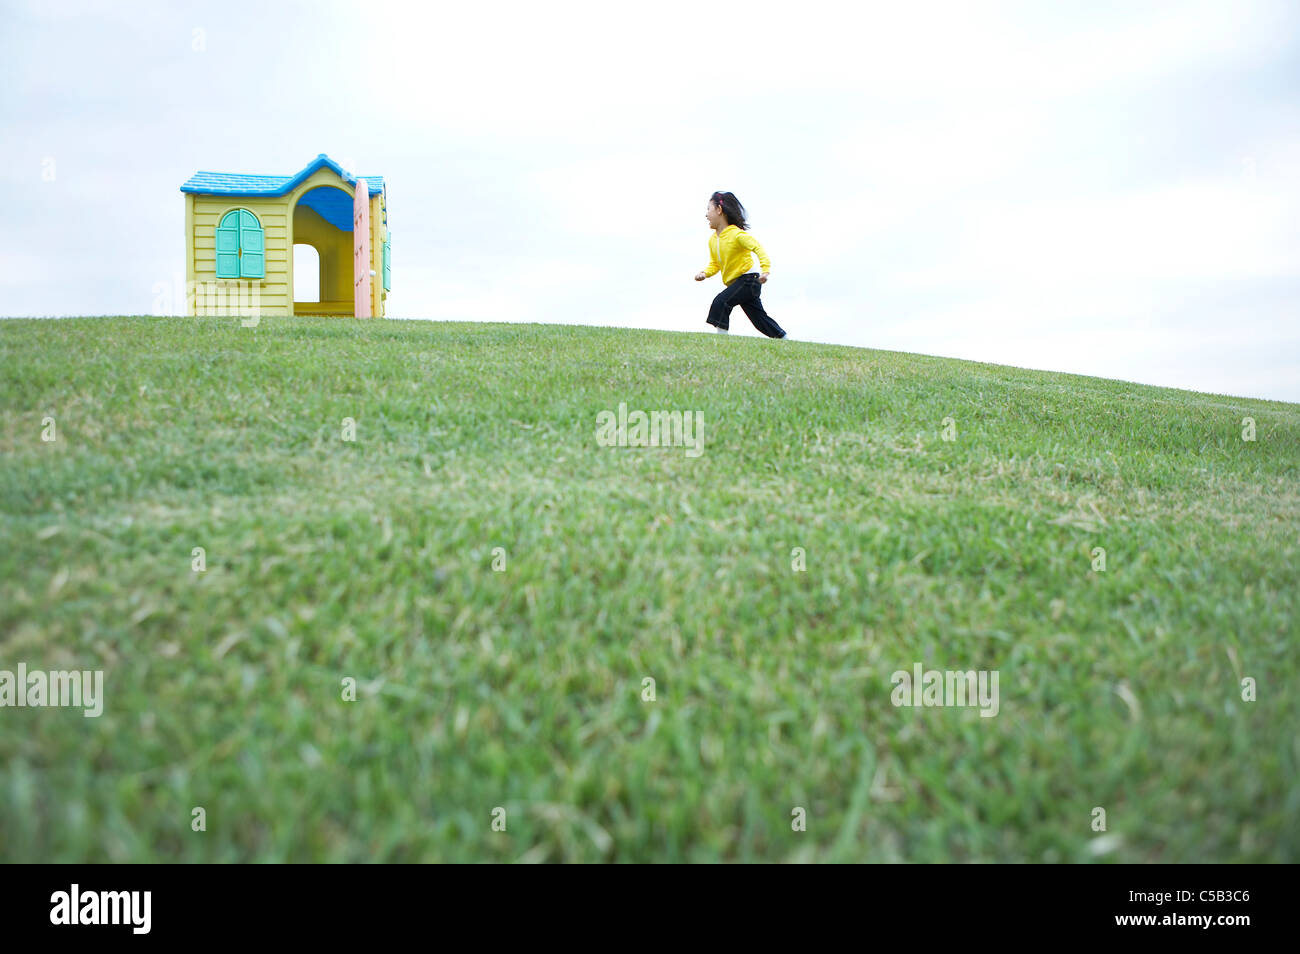 Vue de côté de fille courir sur la pelouse vers toy house Banque D'Images